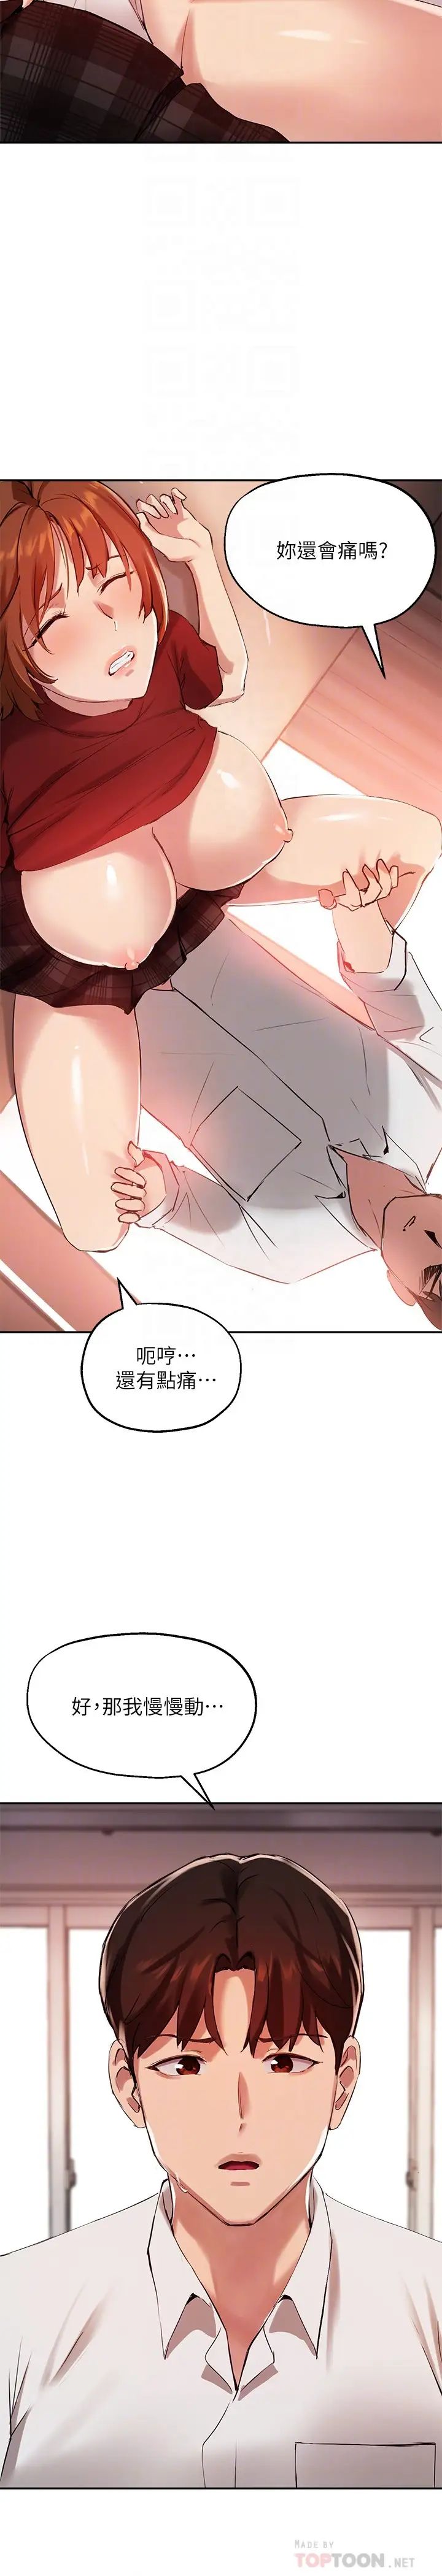 韩国污漫画 指導女大生 第24话想跟教授一起高潮 4